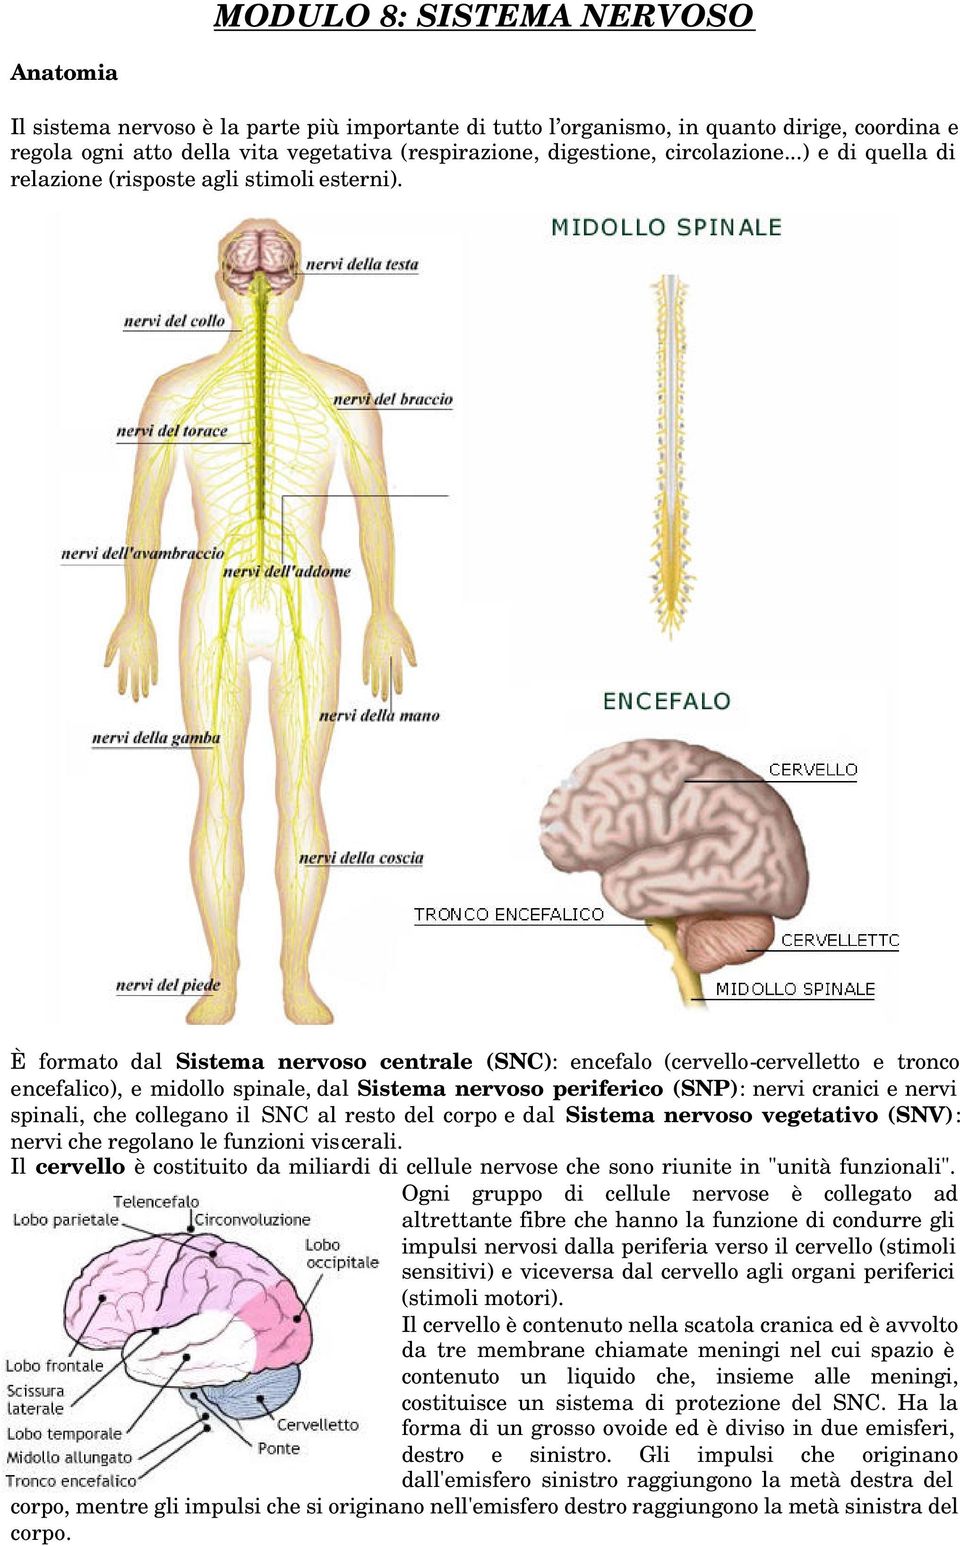 È formato dal Sistema nervoso centrale (SNC): encefalo (cervello-cervelletto e tronco encefalico), e midollo spinale, dal Sistema nervoso periferico (SNP): nervi cranici e nervi spinali, che